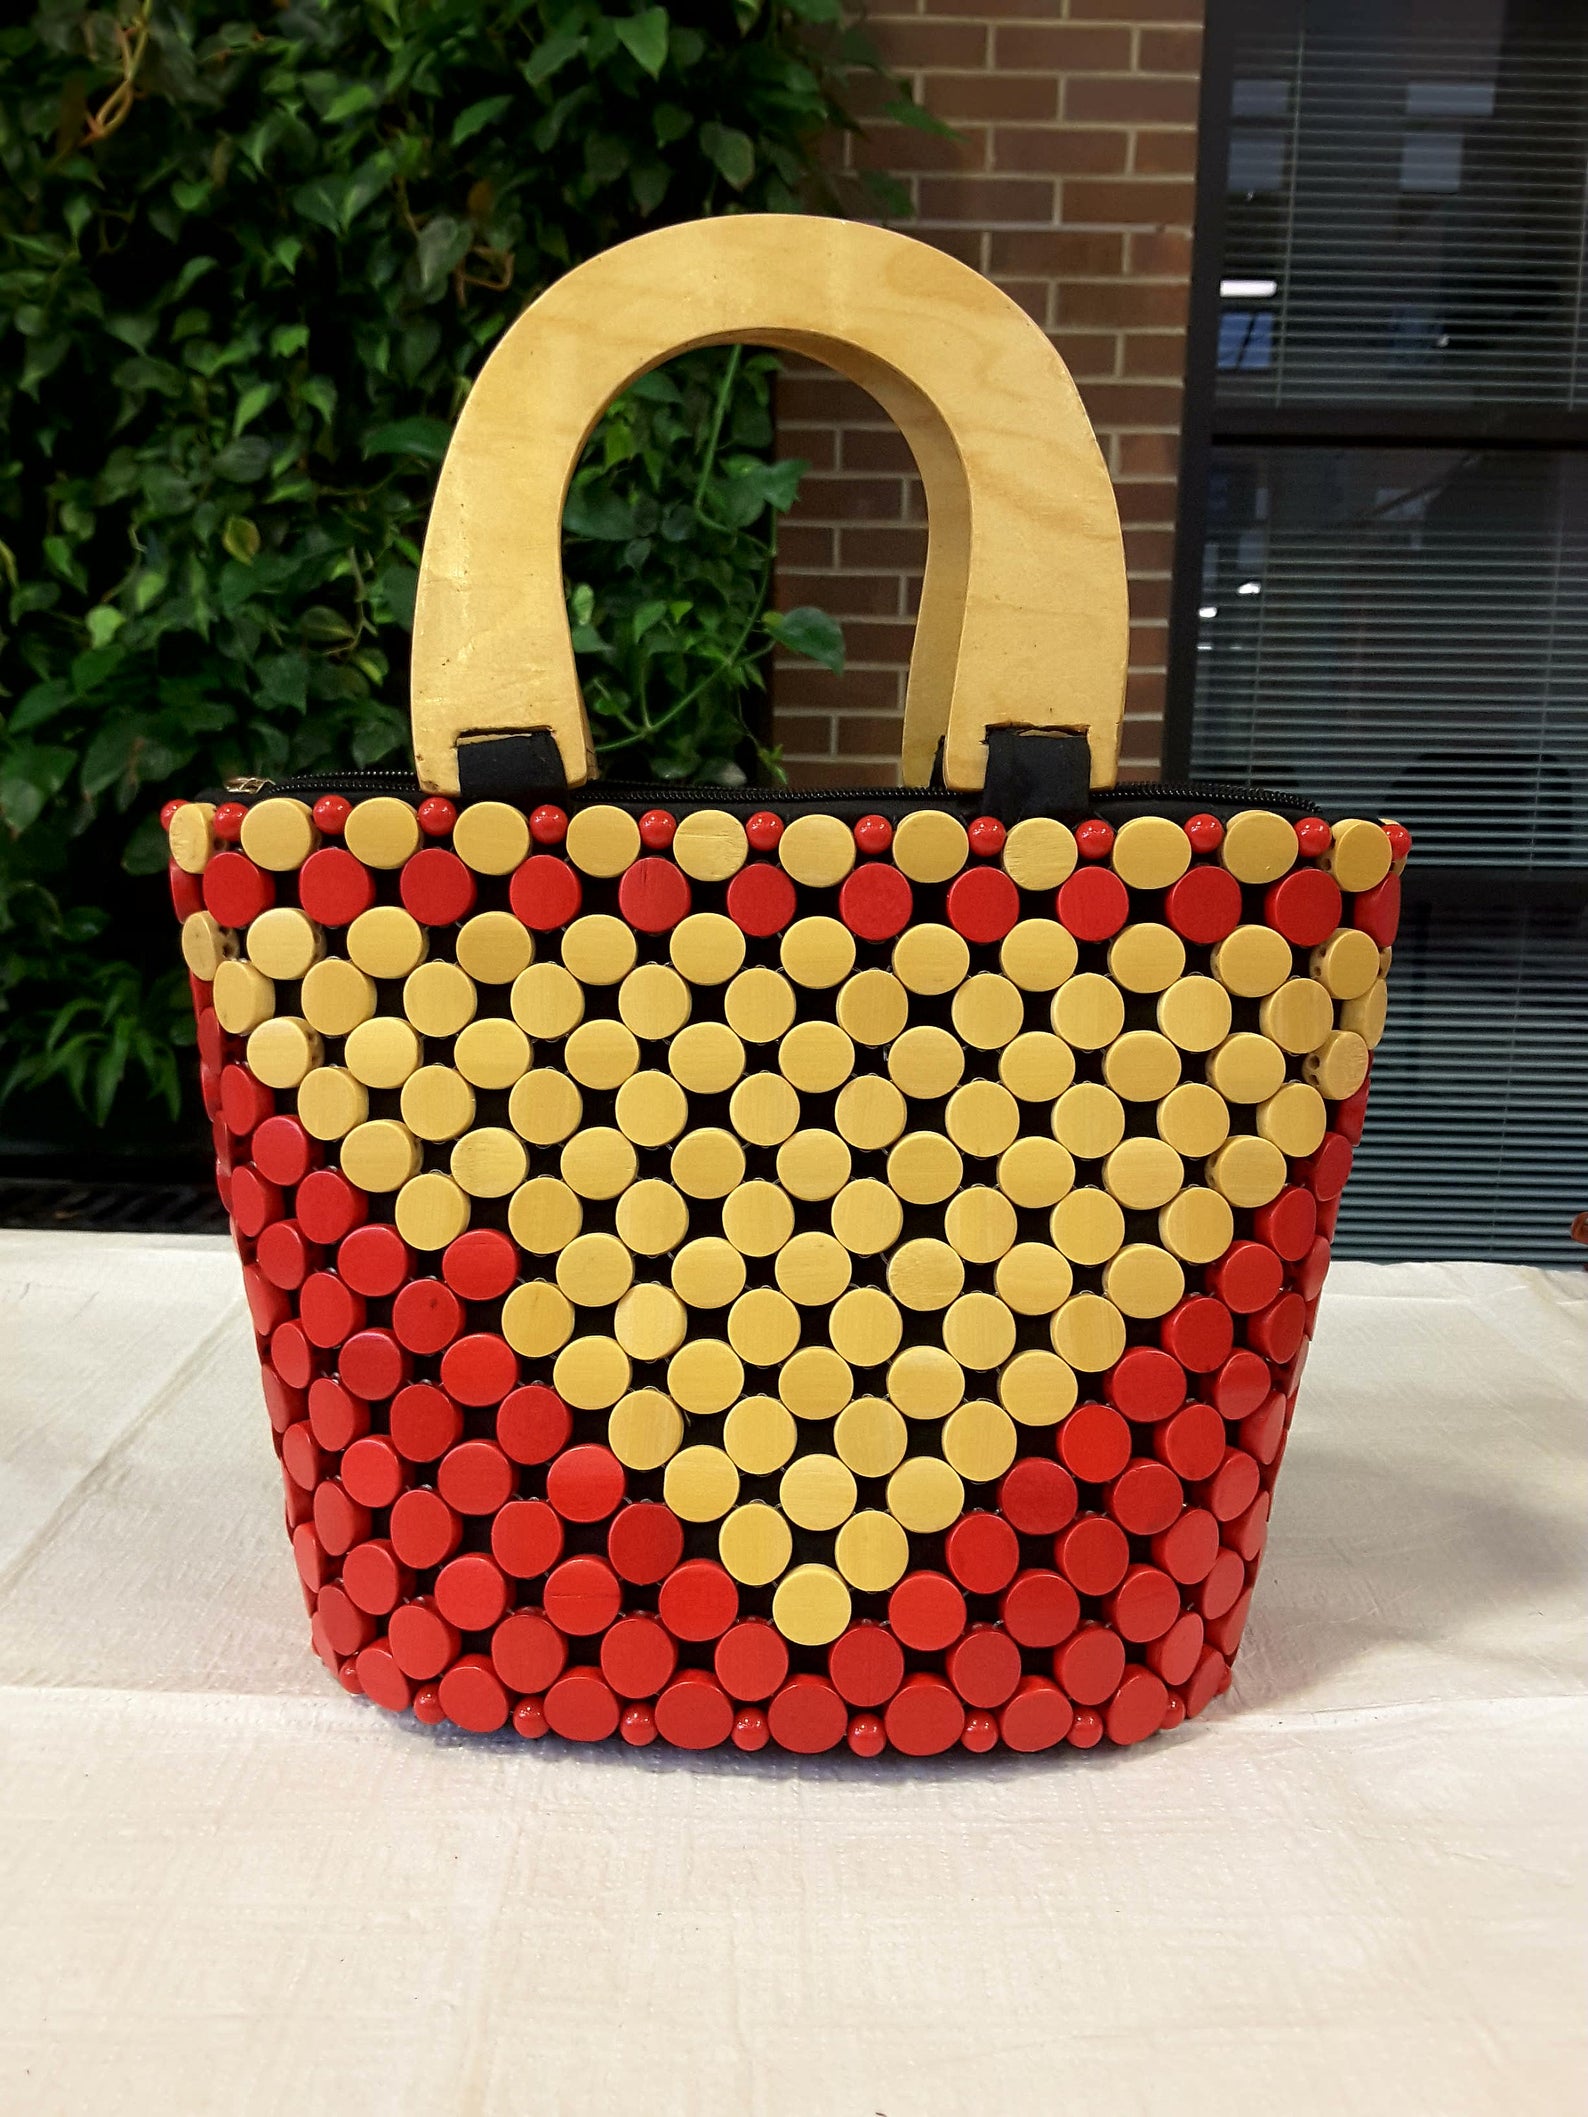 Handmade wooden handbag